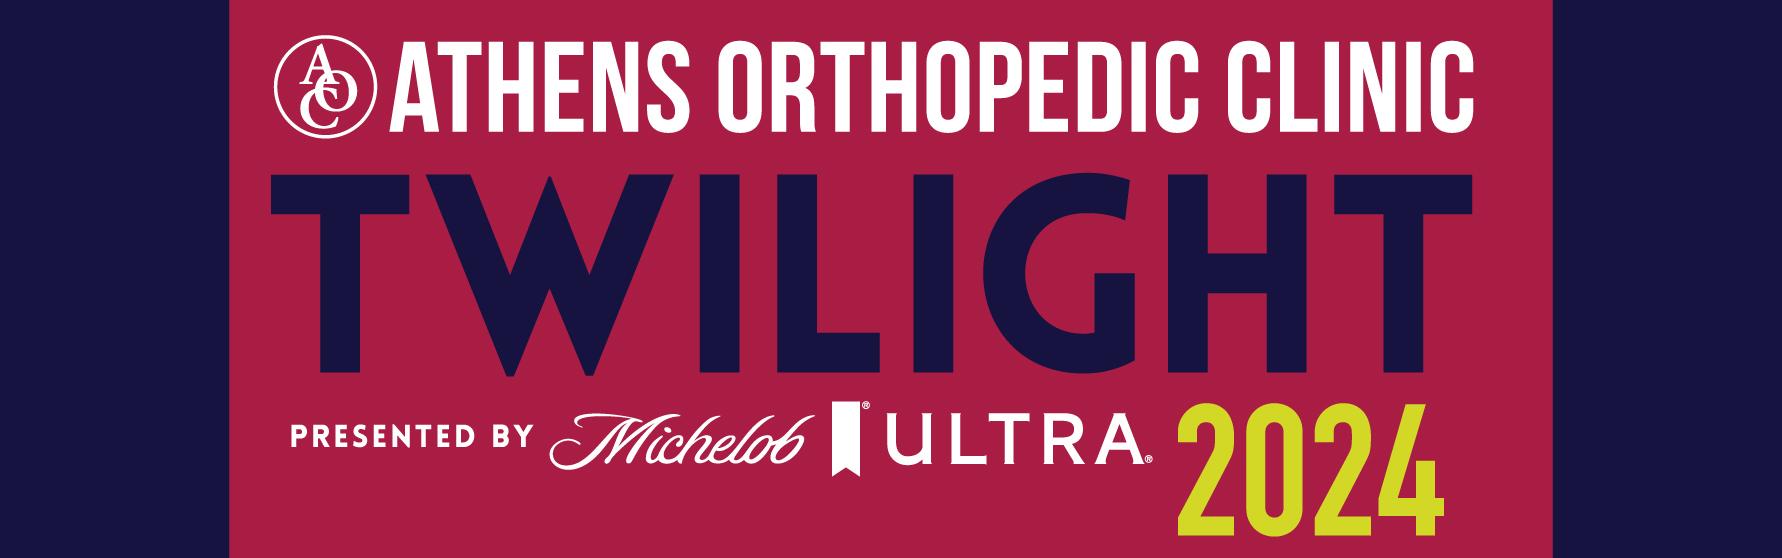 Athens Orthopedic Clinic Twilight Criterium